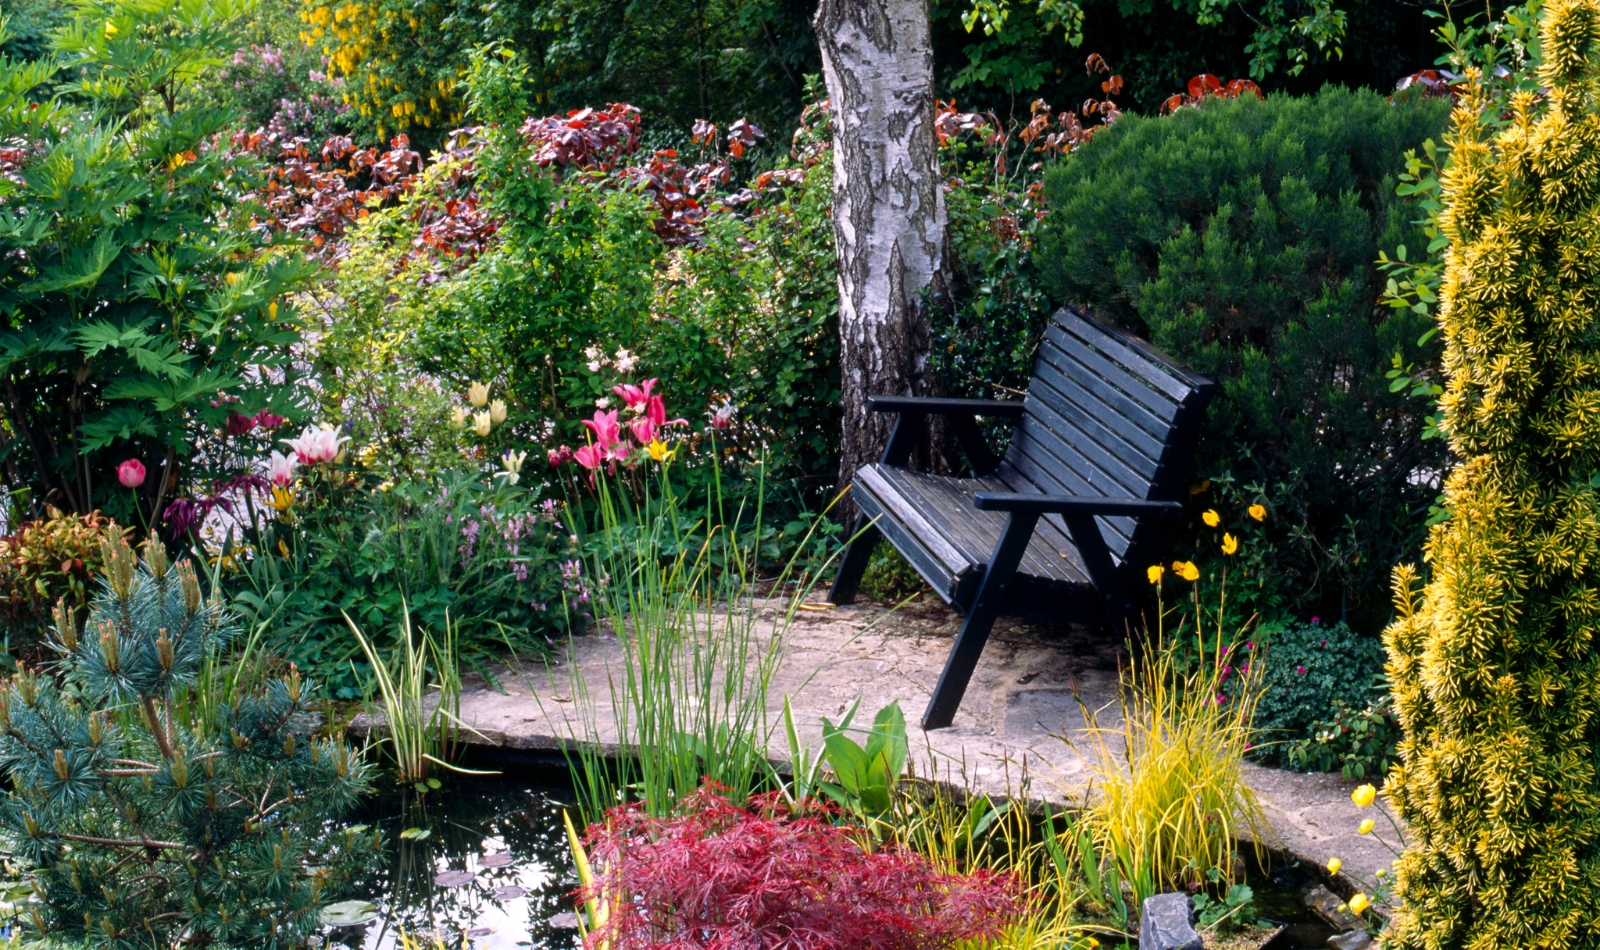 a bench in a garden